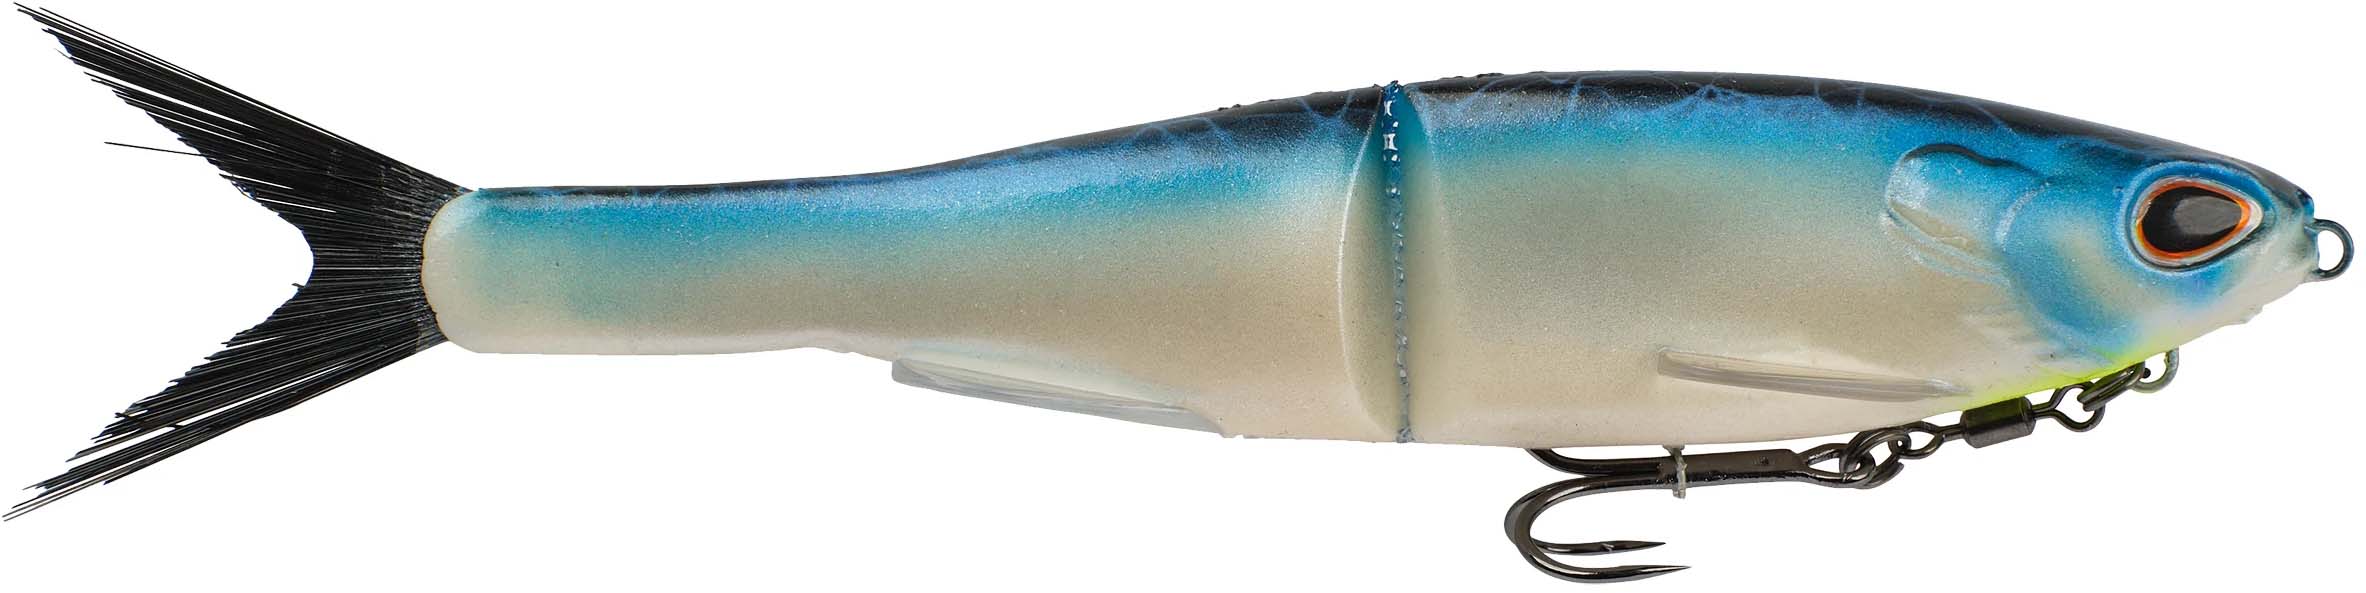 Berkley Powerbait Nessie Soft Plastic Glide Bait